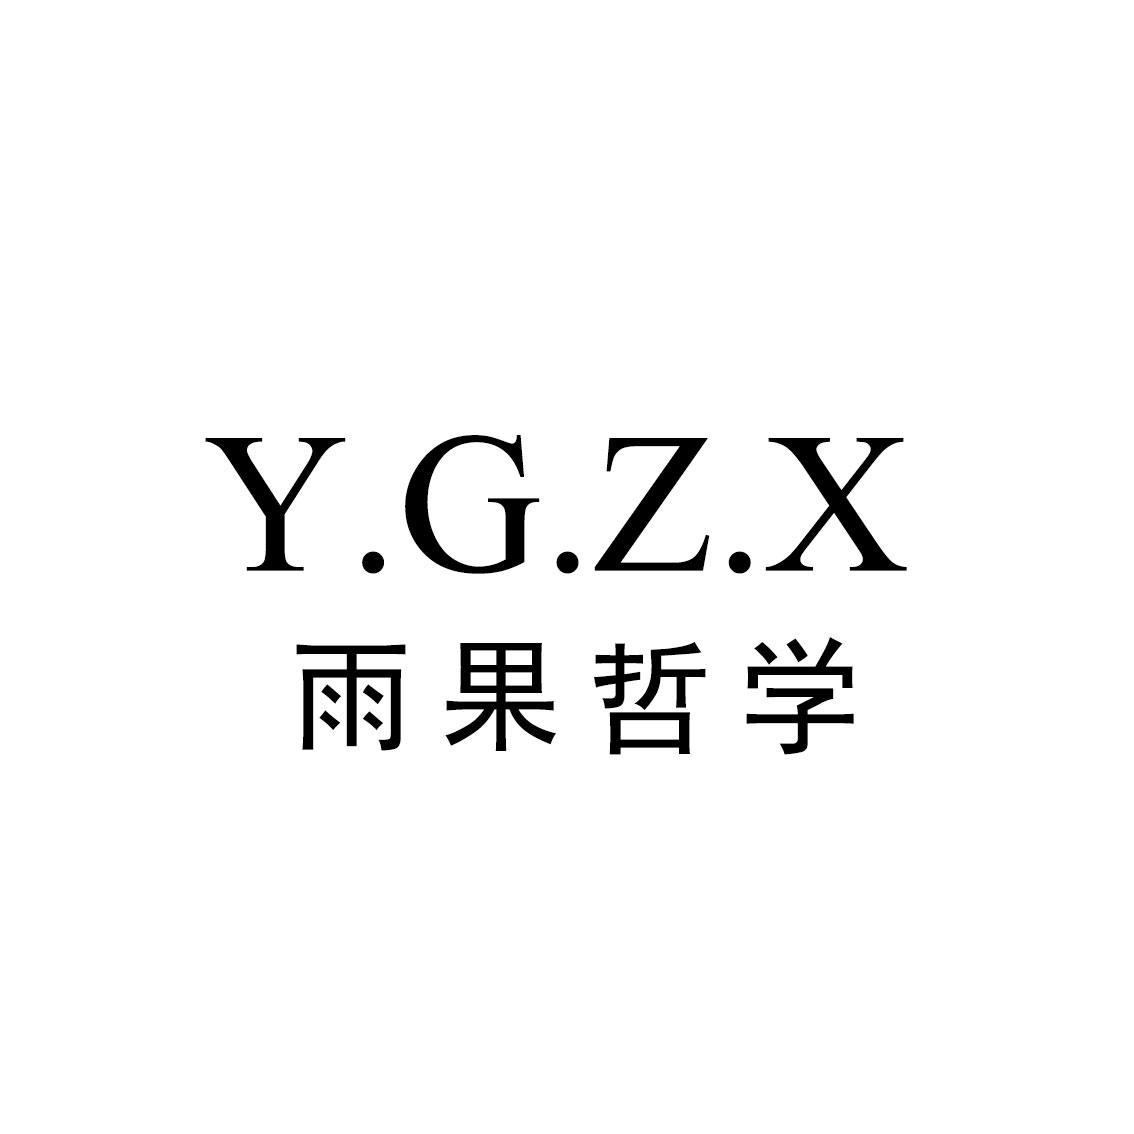 Y.G.Z.X雨果哲学商标转让